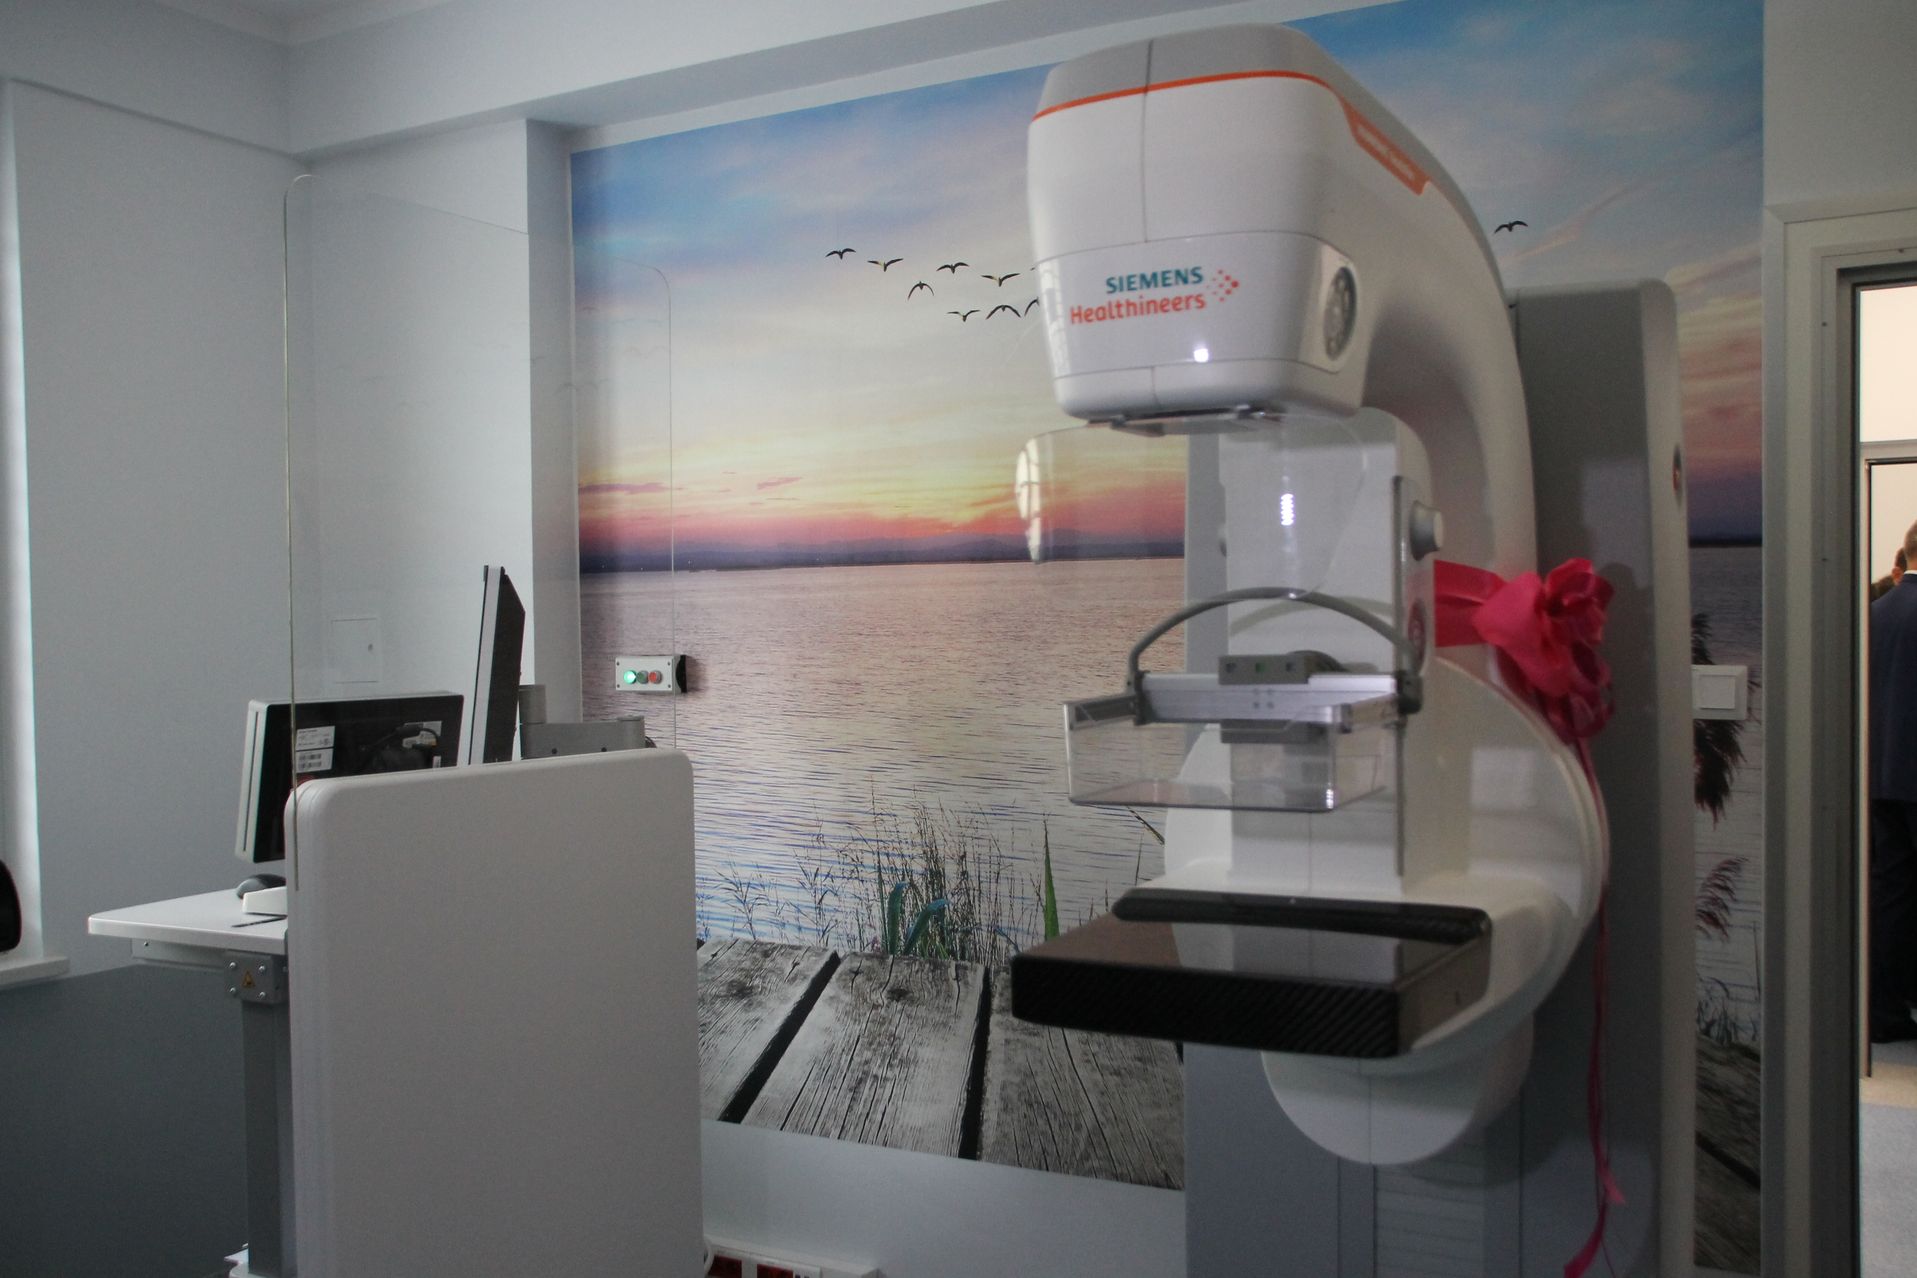 Wrocław: Bezpłatne badania mammograficzne - one mogą uratować życie